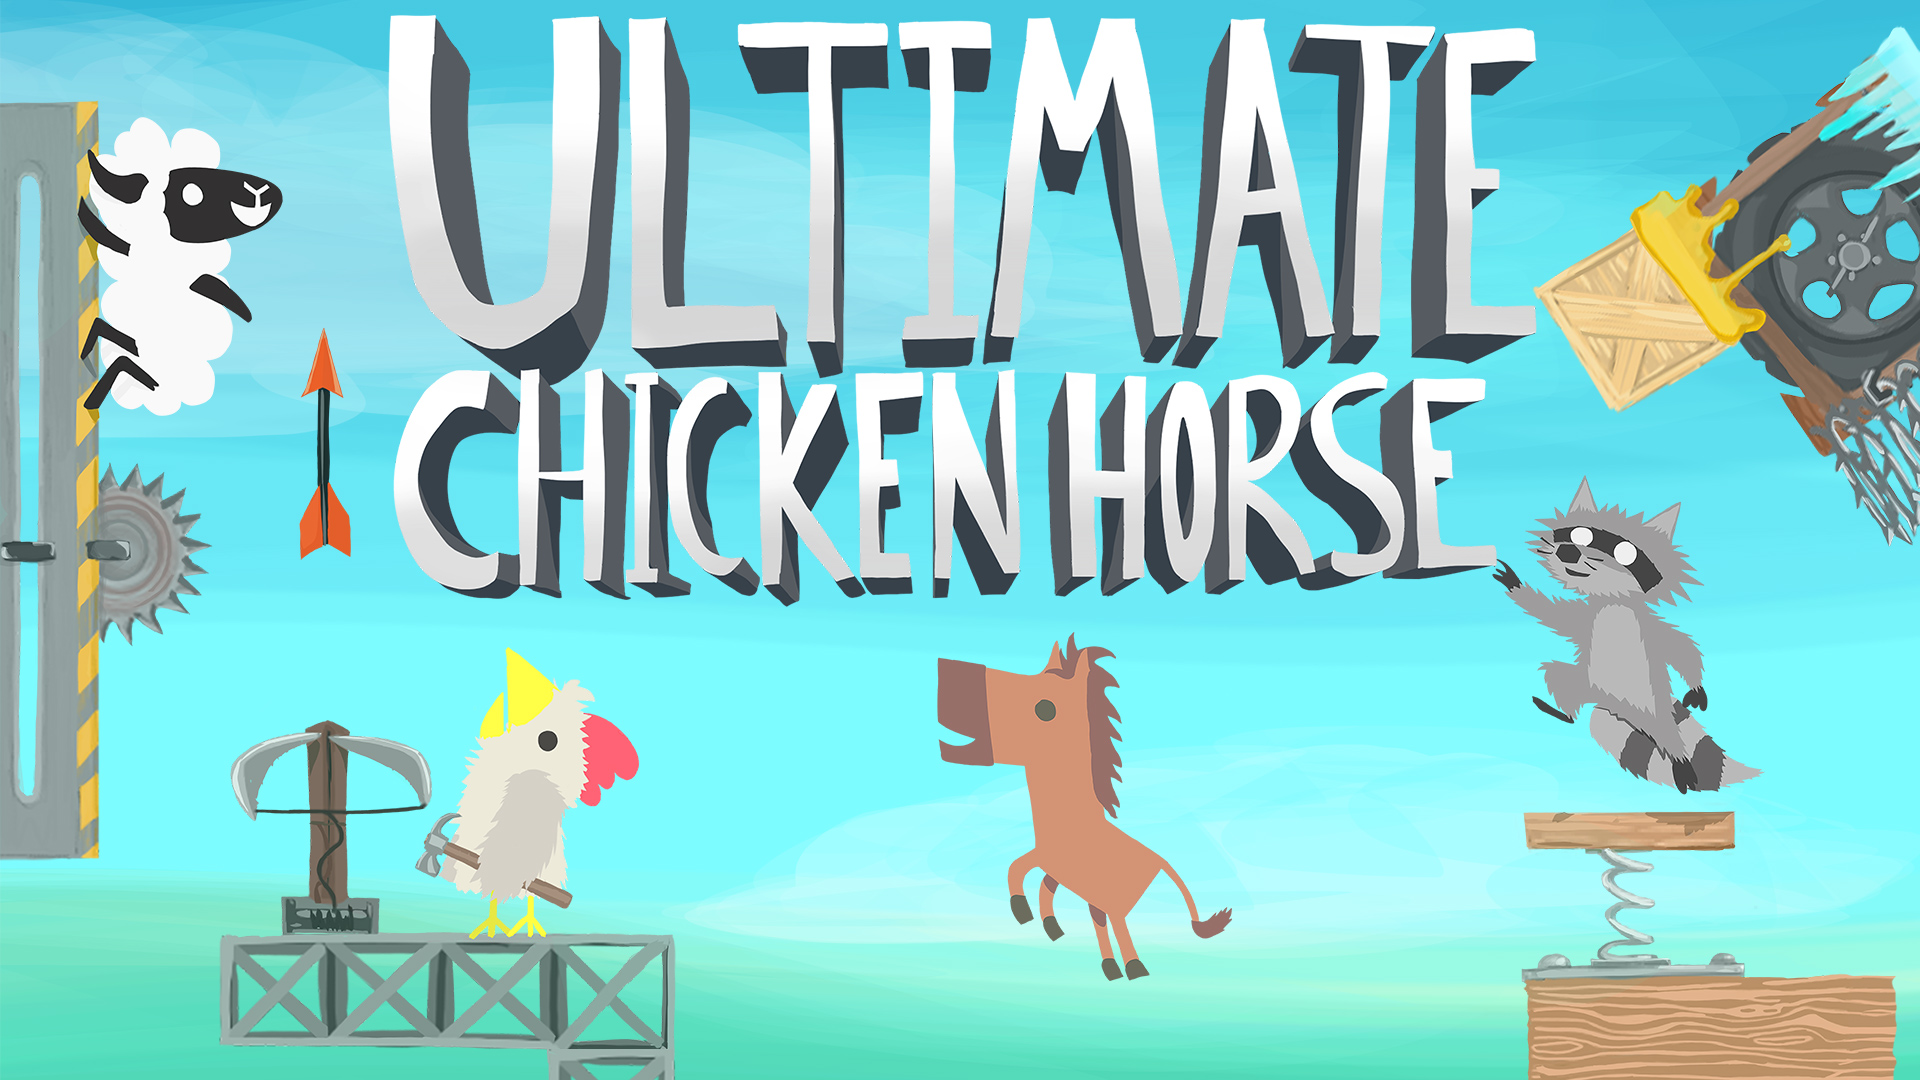 ultimate chicken horse eshop